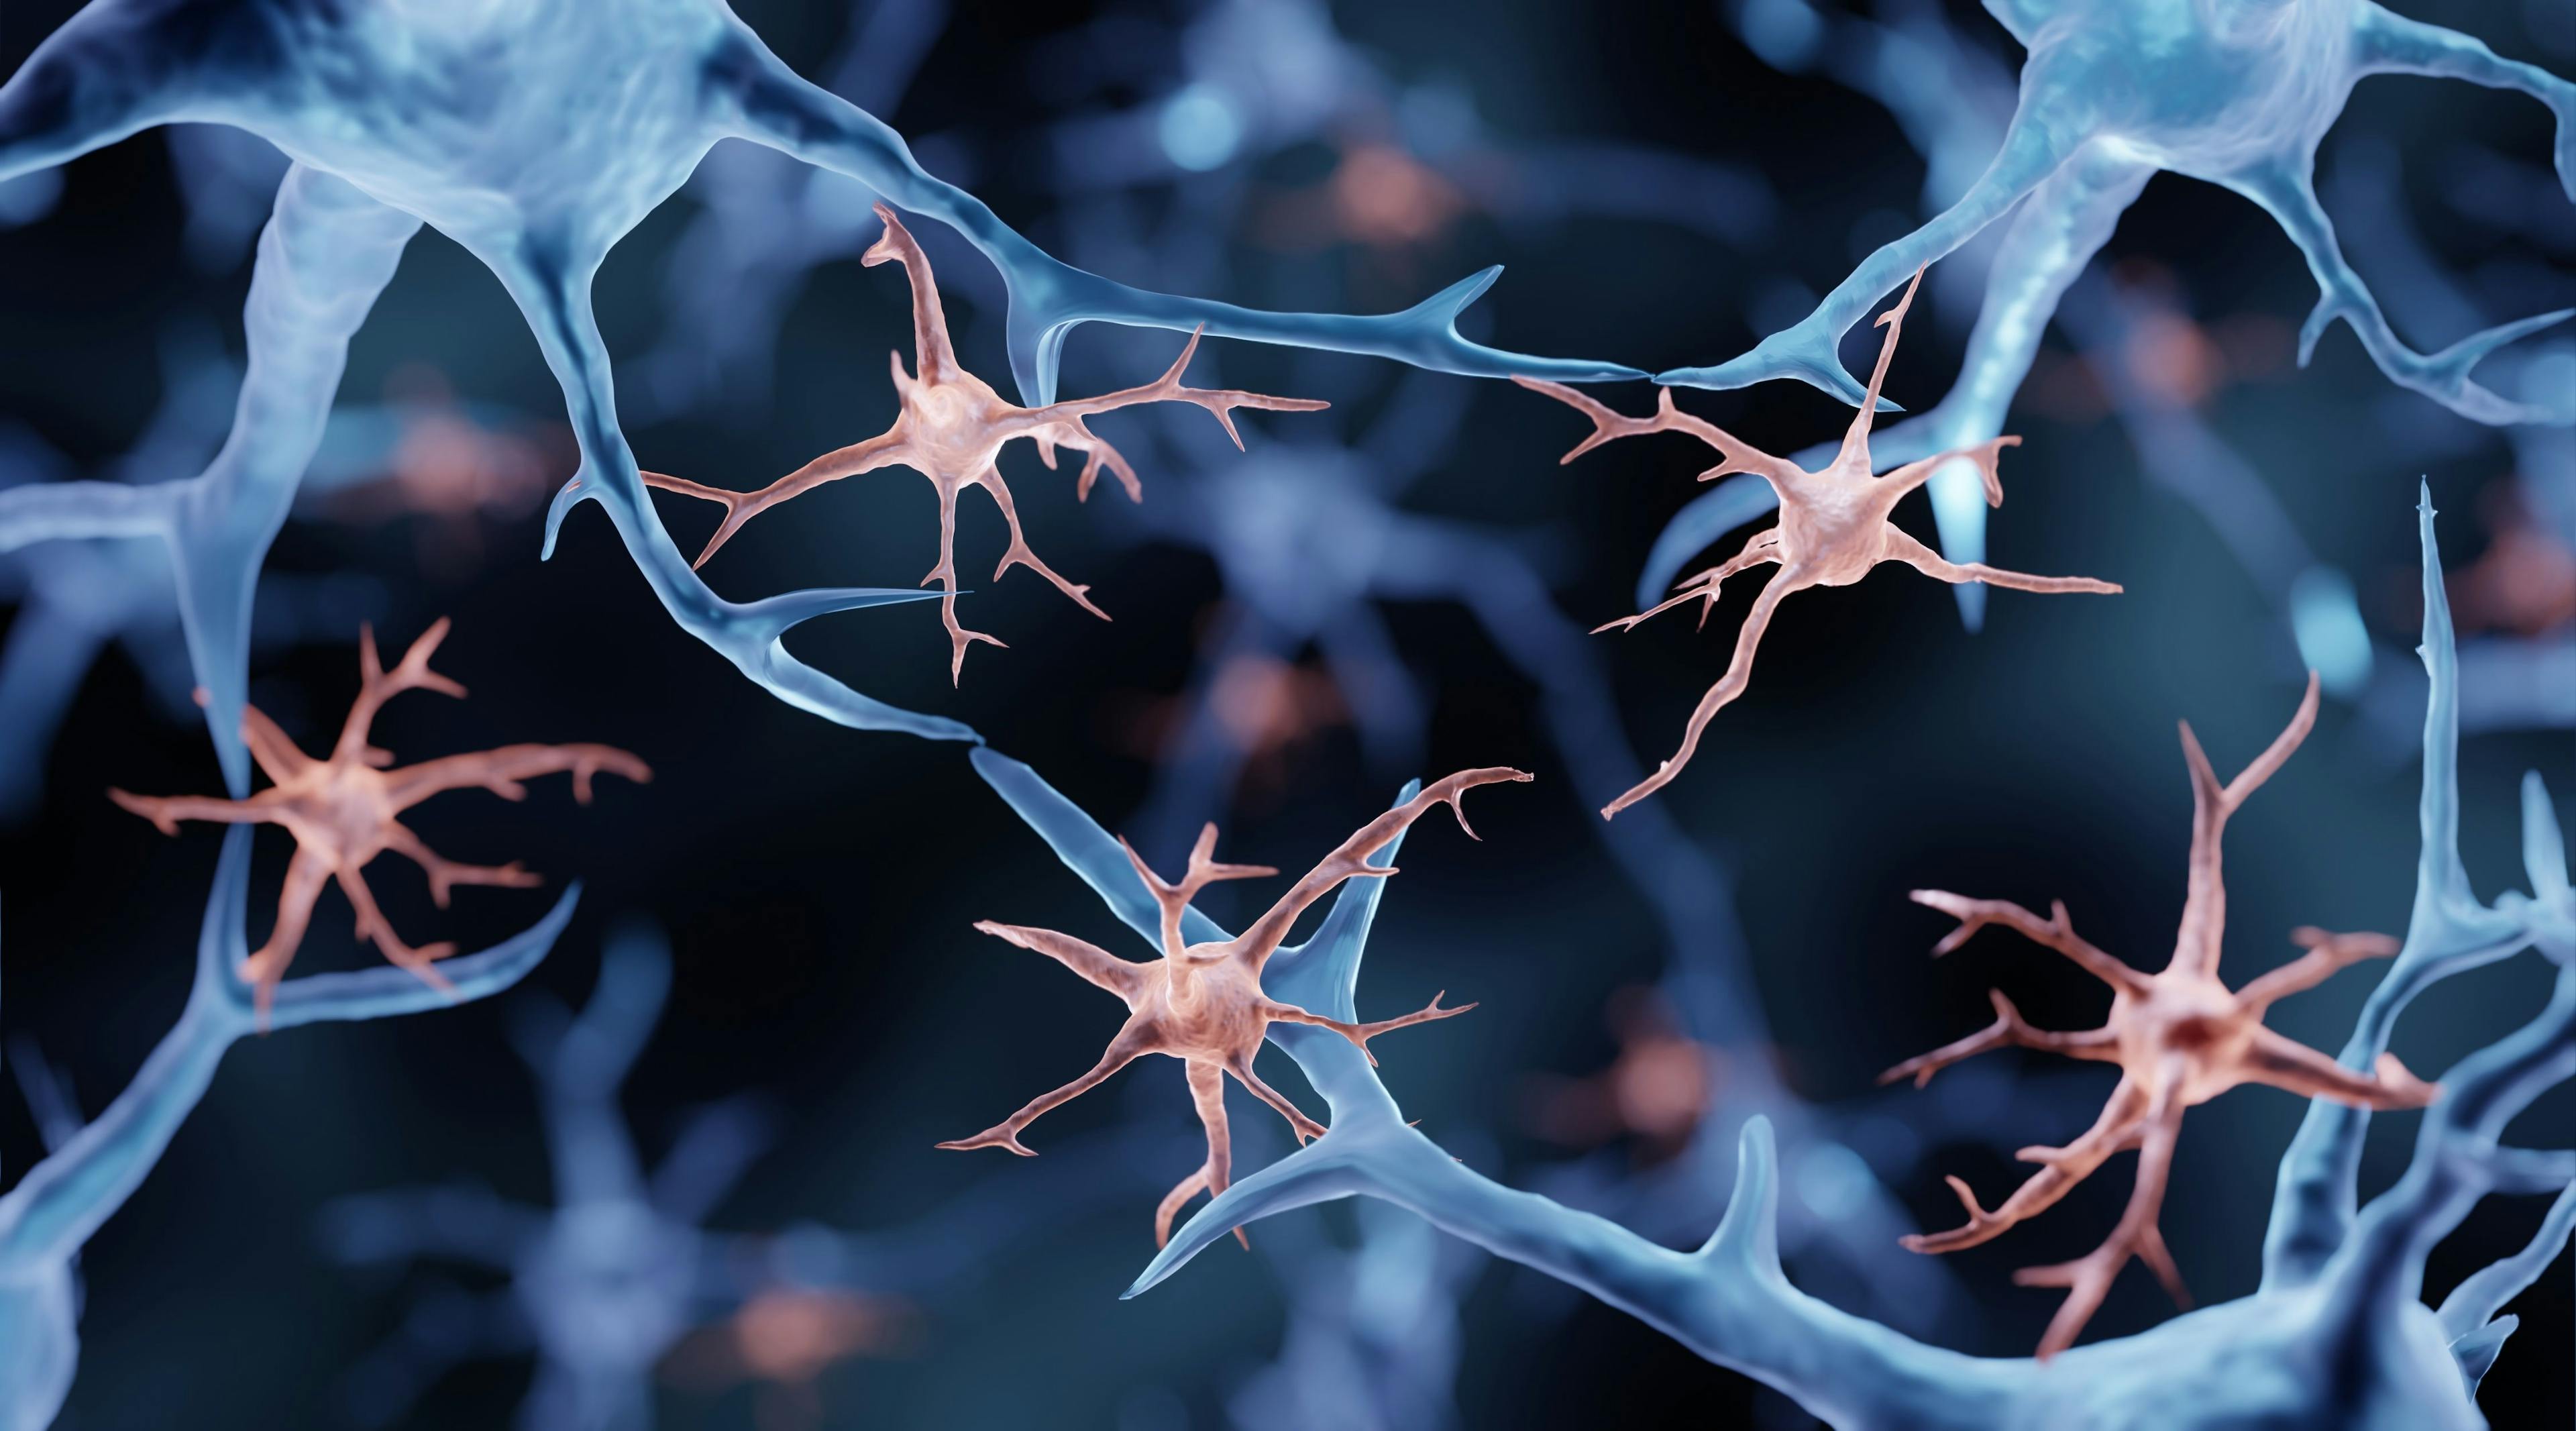 Microglia are immune cells in the brain | Image Credit: Artur - stock.adobe.com